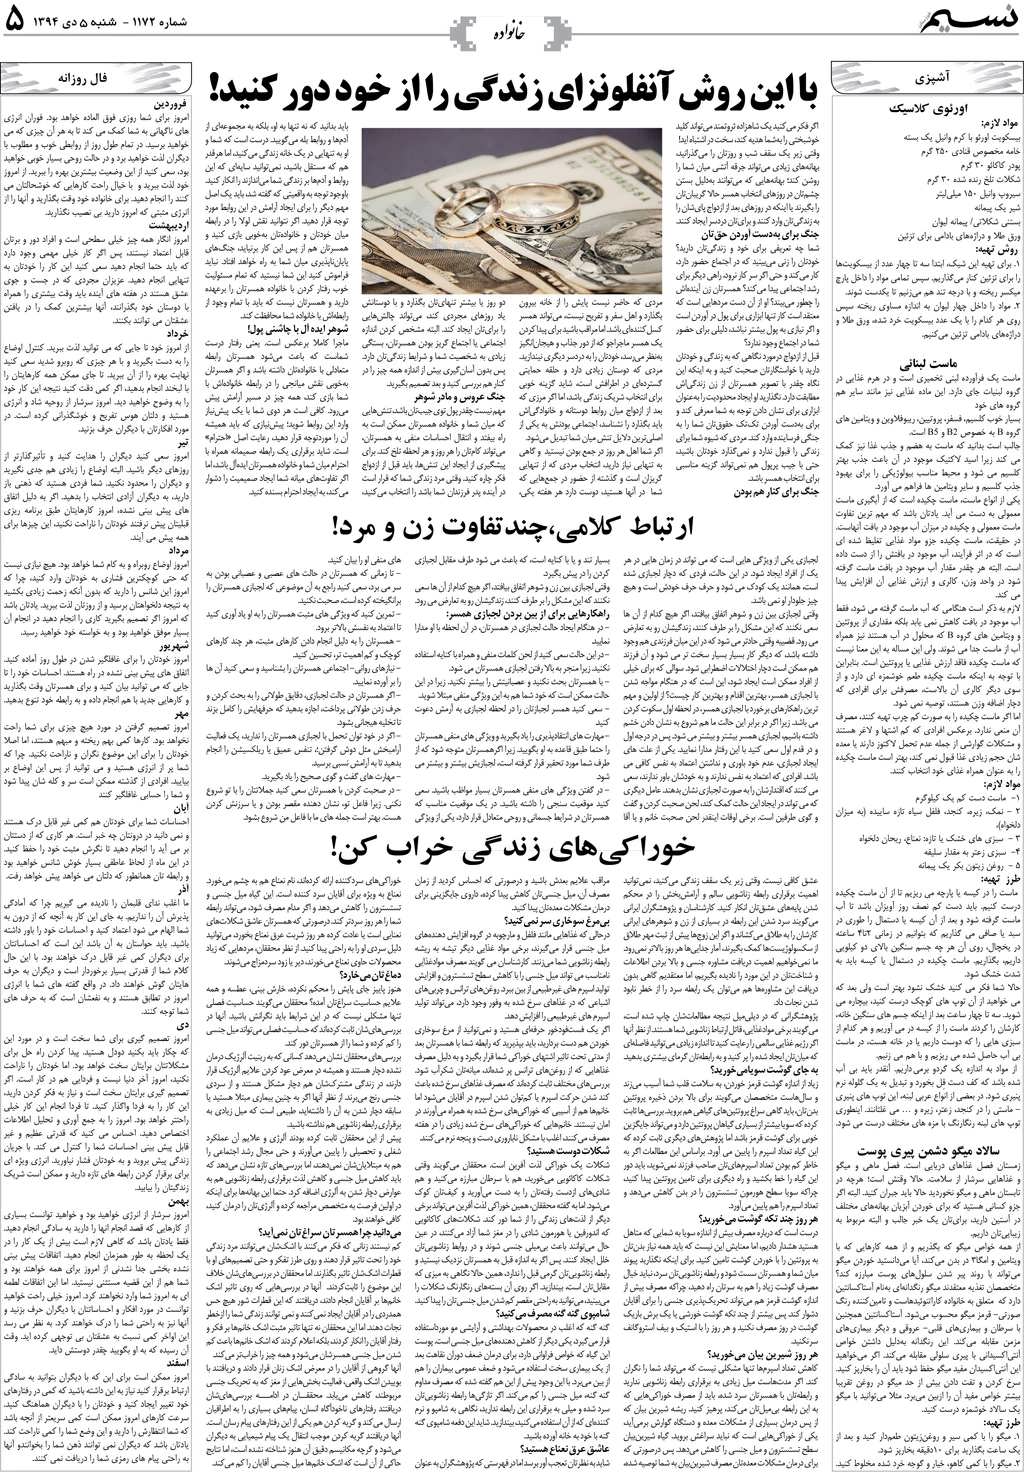 صفحه خانواده روزنامه نسیم شماره 1172